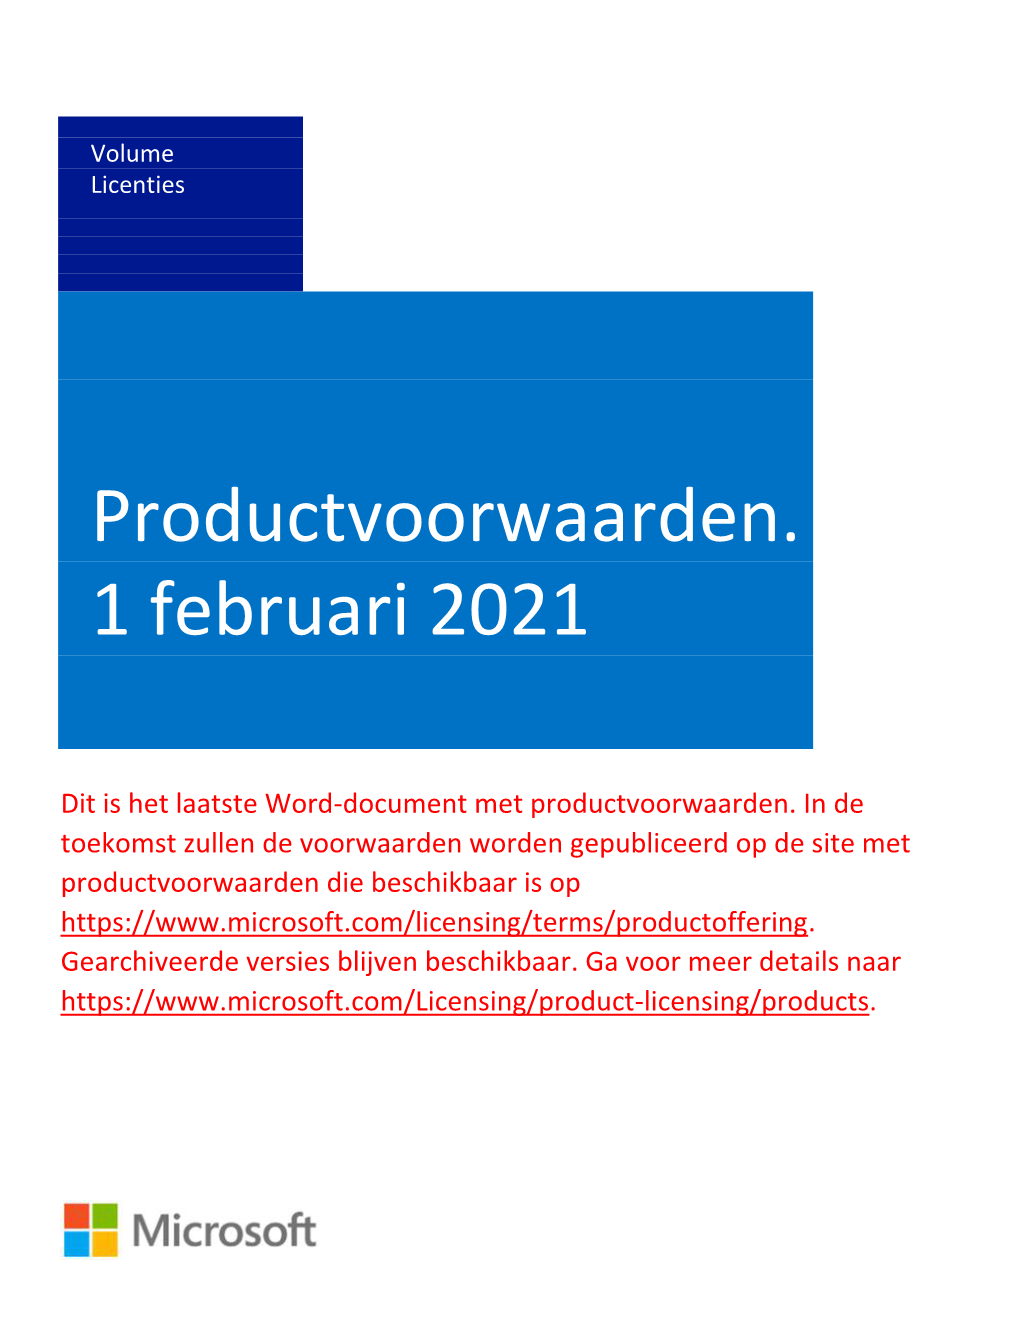 Productvoorwaarden. 1 Februari 2021